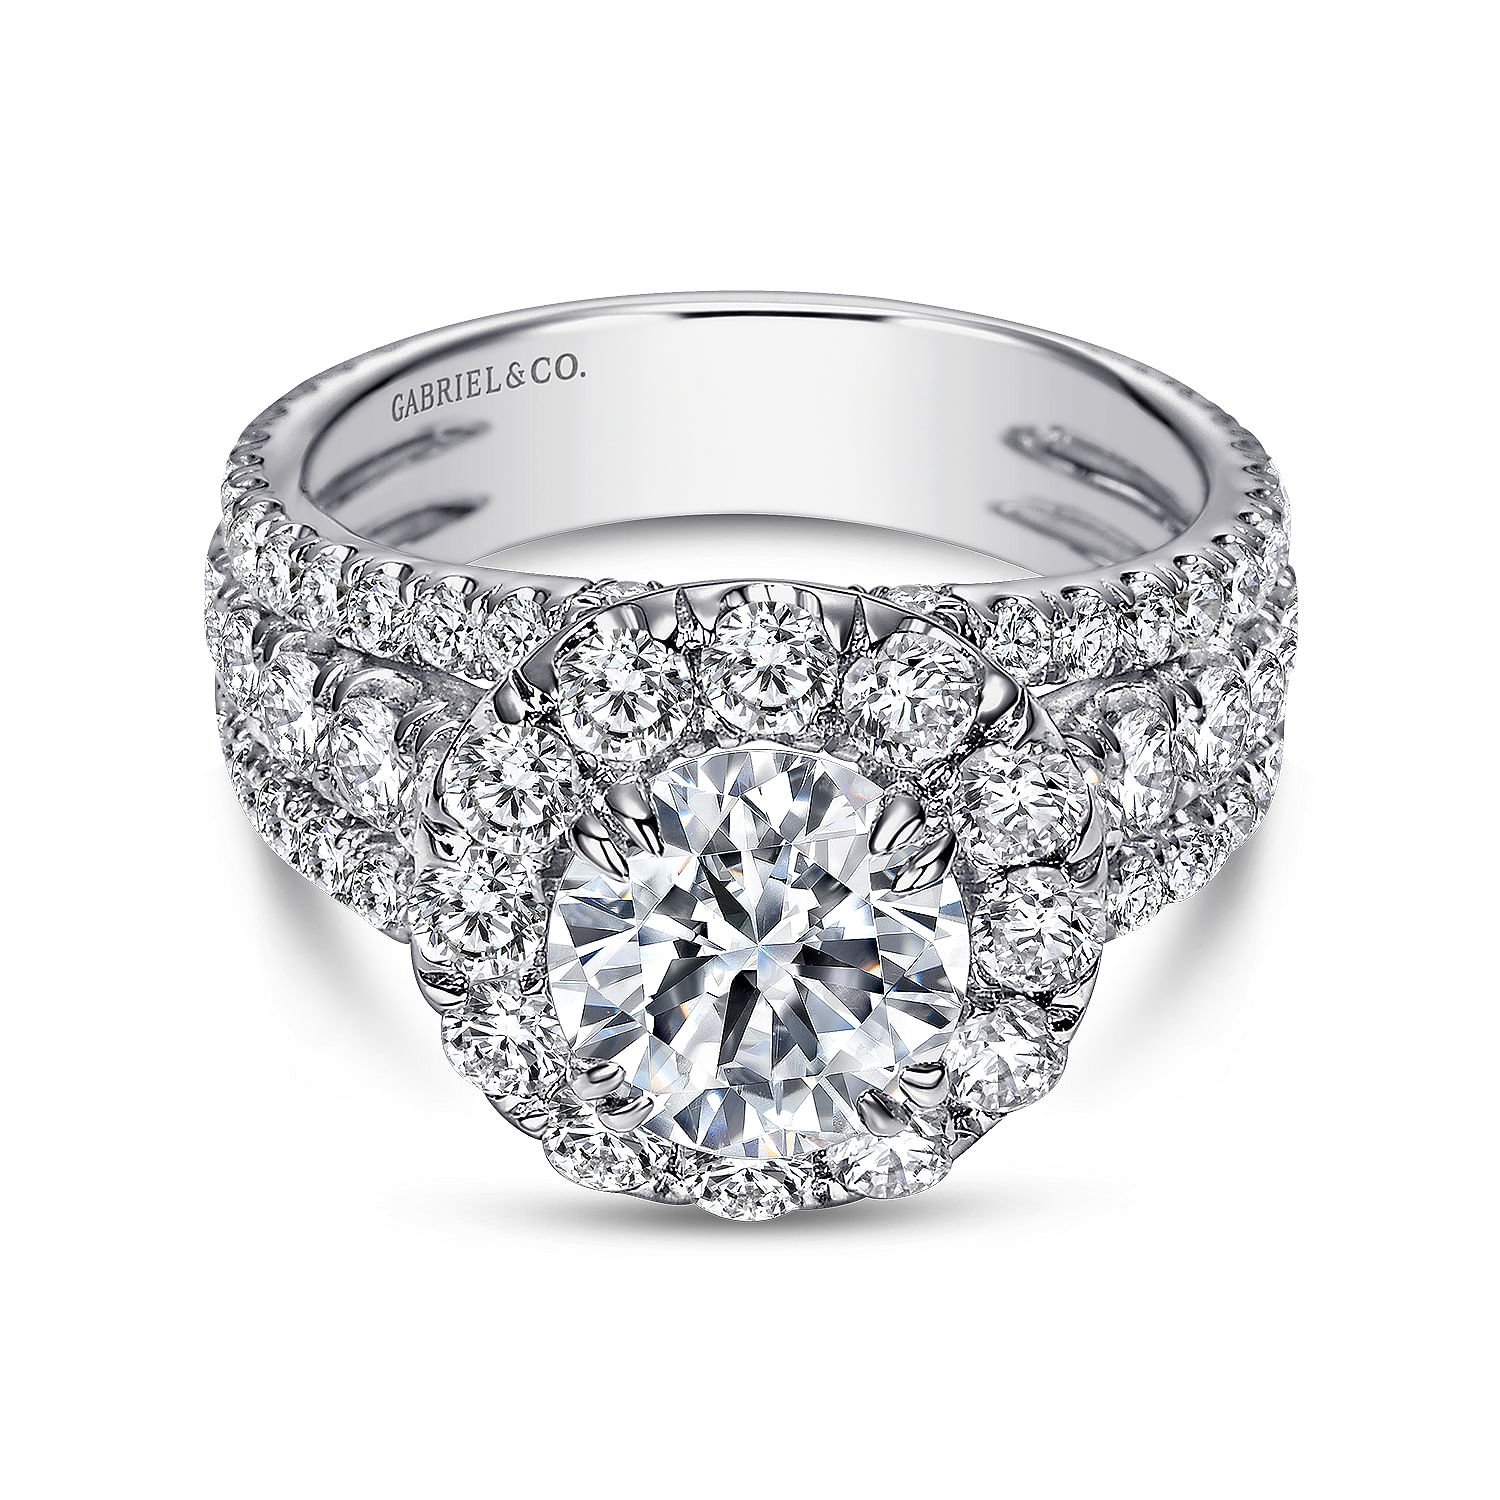 Lainey - 14K White Gold Round Halo Diamond Engagement Ring